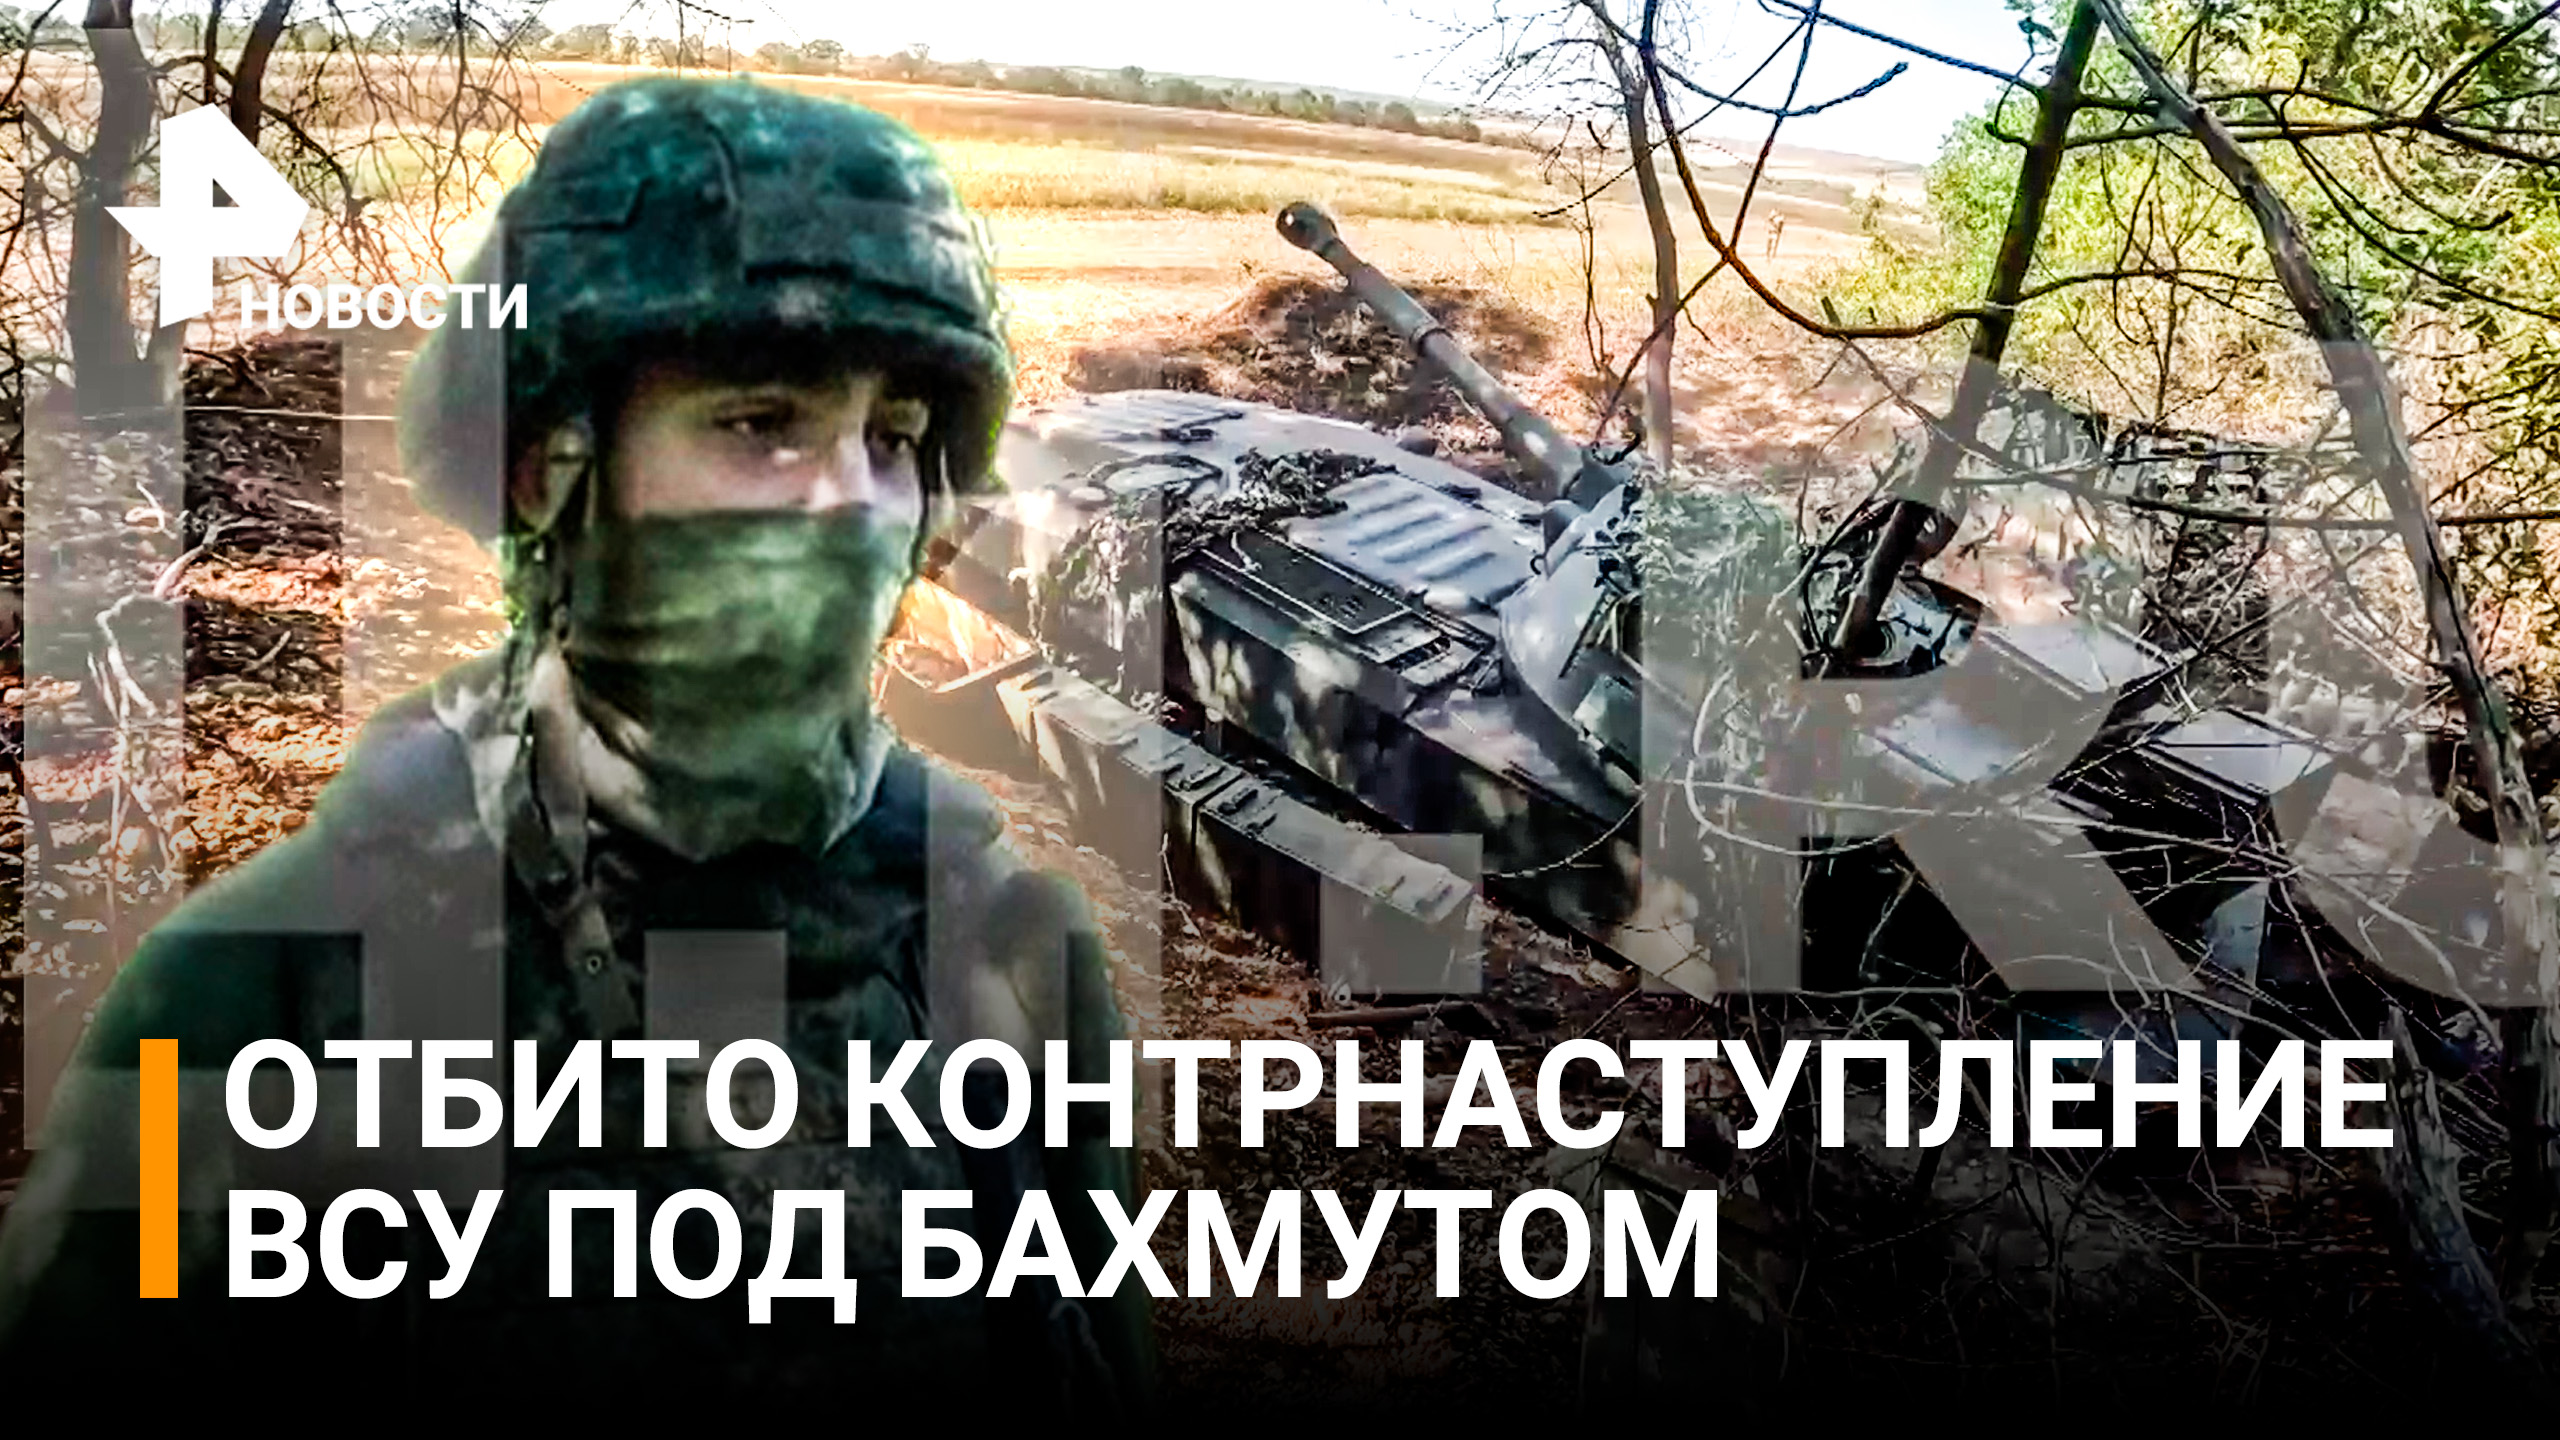 "Могилизация" ВСУ под Бахмутом: как союзные войска оттесняют подразделения Украины / РЕН Новости